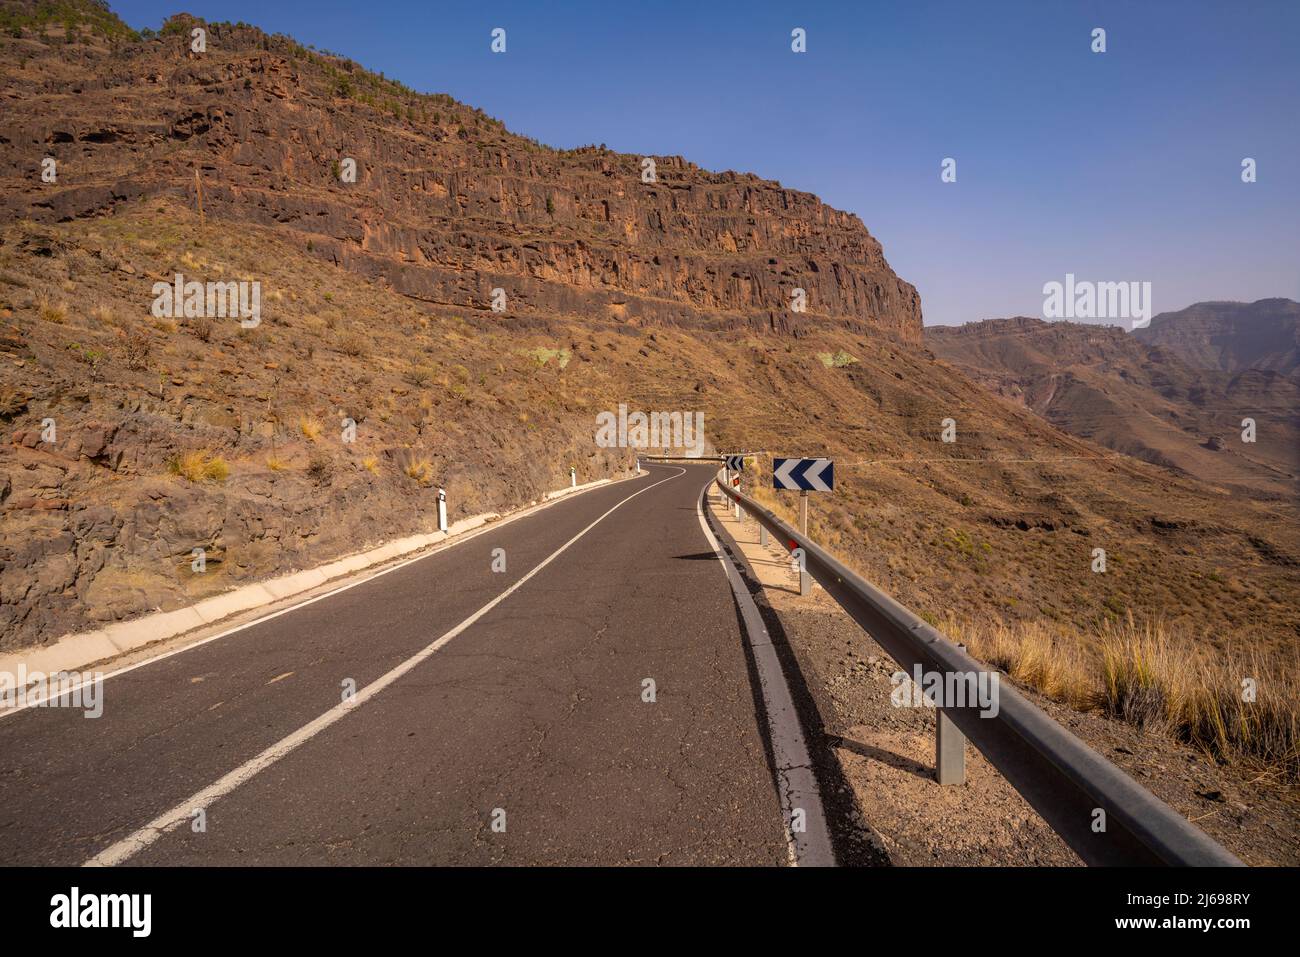 Vue sur la route en paysage montagneux près de Tasarte, Gran Canaria, îles Canaries, Espagne, Atlantique, Europe Banque D'Images